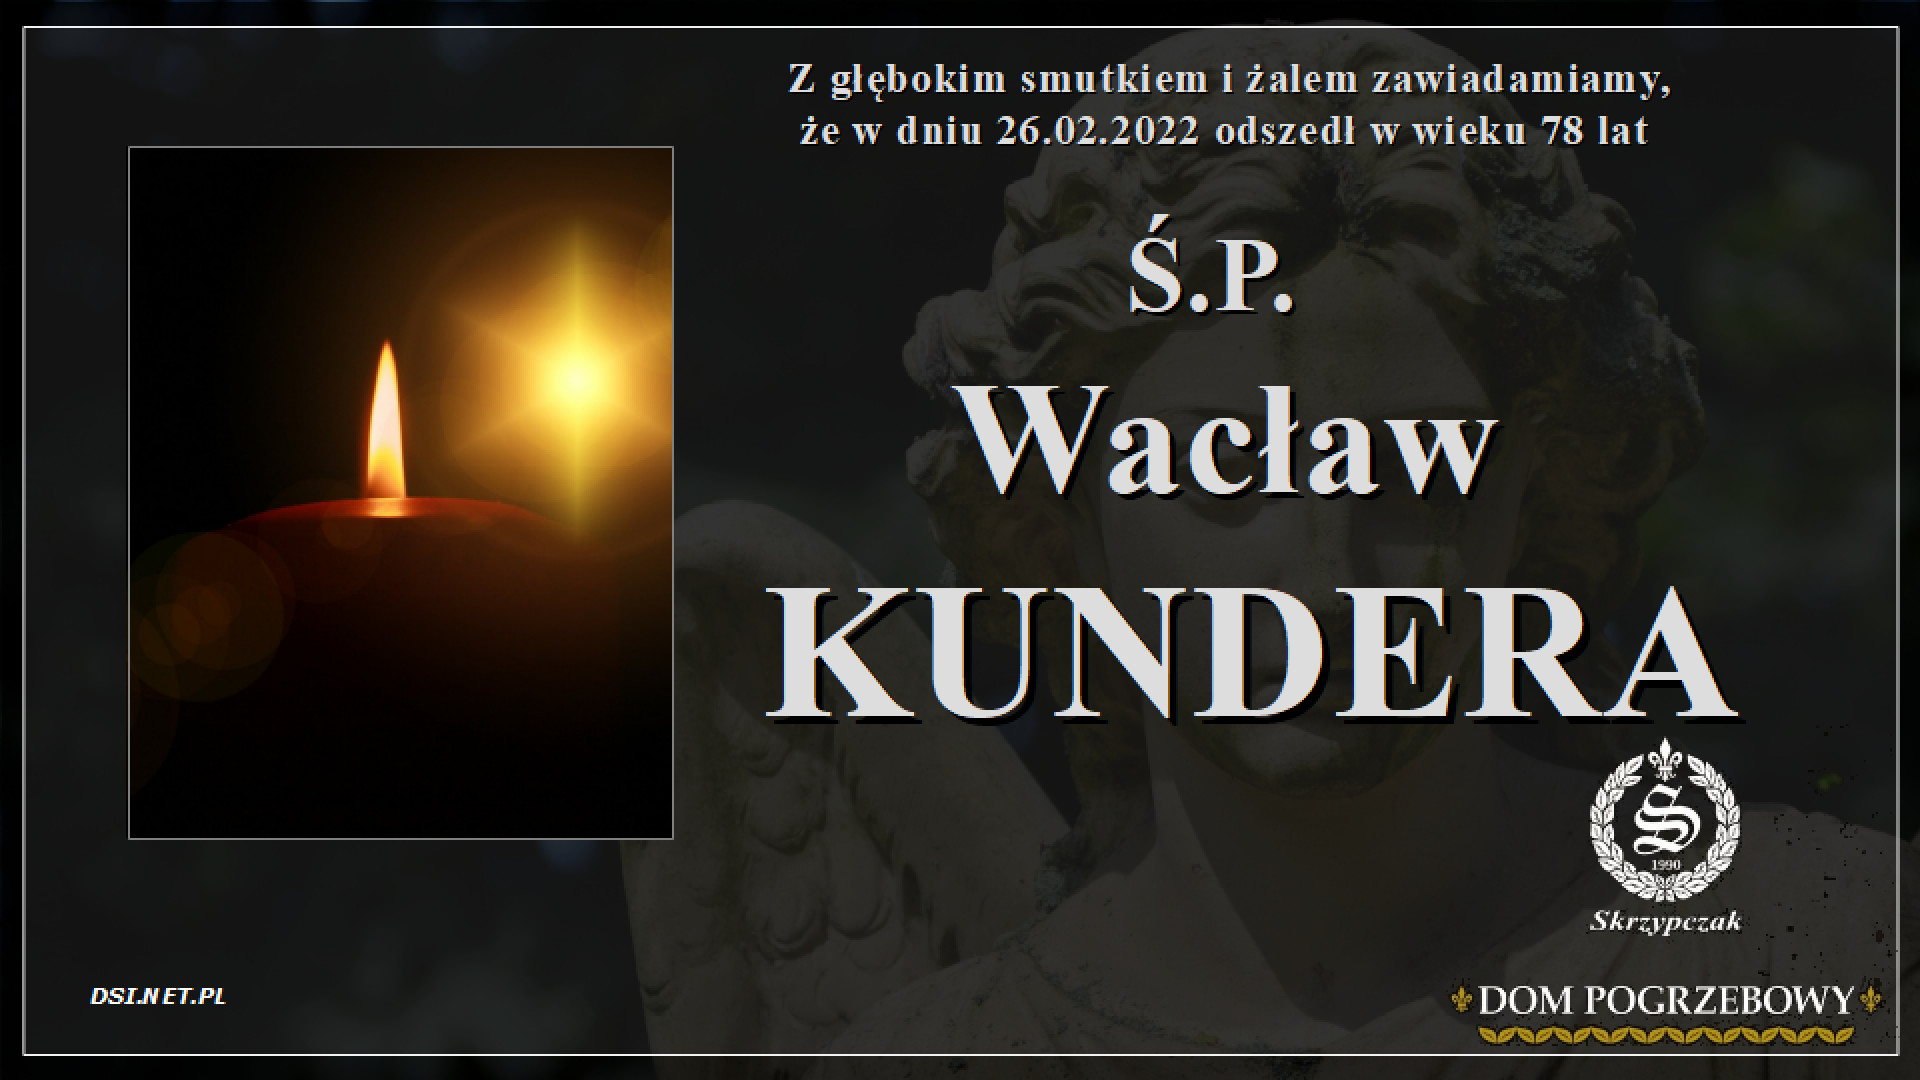 Ś.P. Wacław Kundera